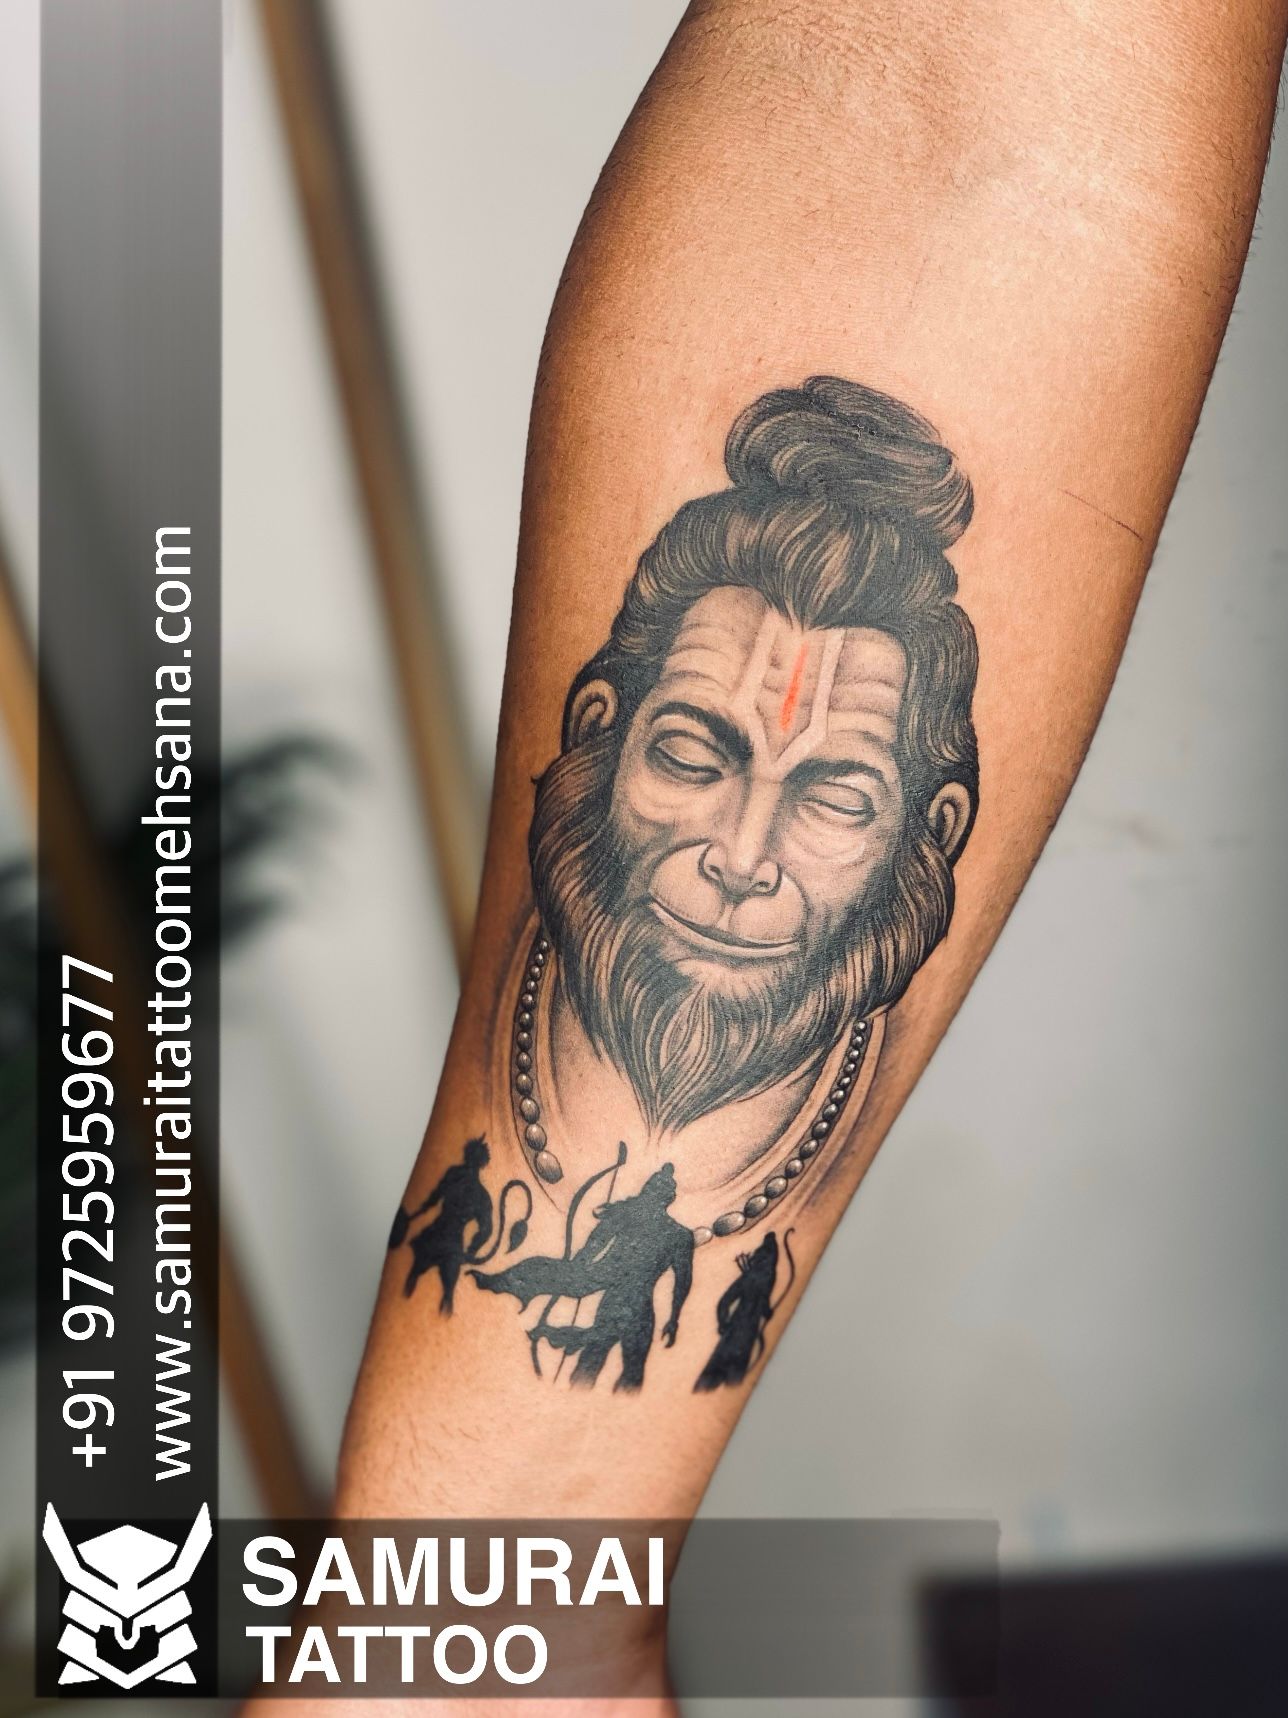 Dina karan on LinkedIn: #immortal_creative_tattoo #rtnagar #tattoo  #tattooshops #tattoos…